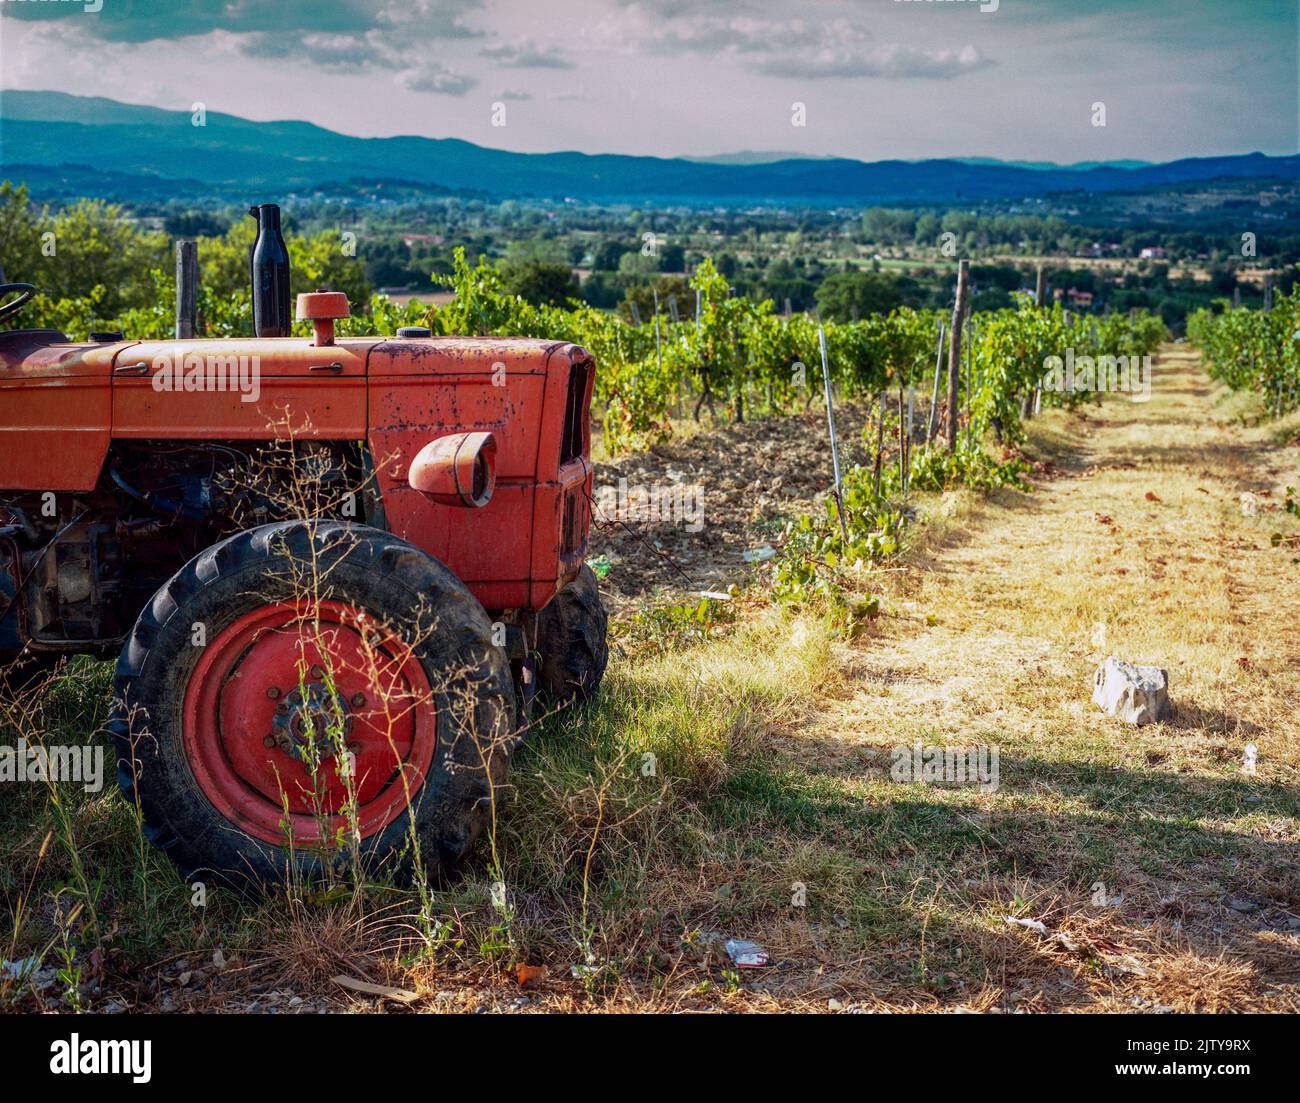 Tracteur orange Fiat sur le terrain de sangiovese. Les raisins de sangiovese sont de base pour le vin chianti. Banque D'Images